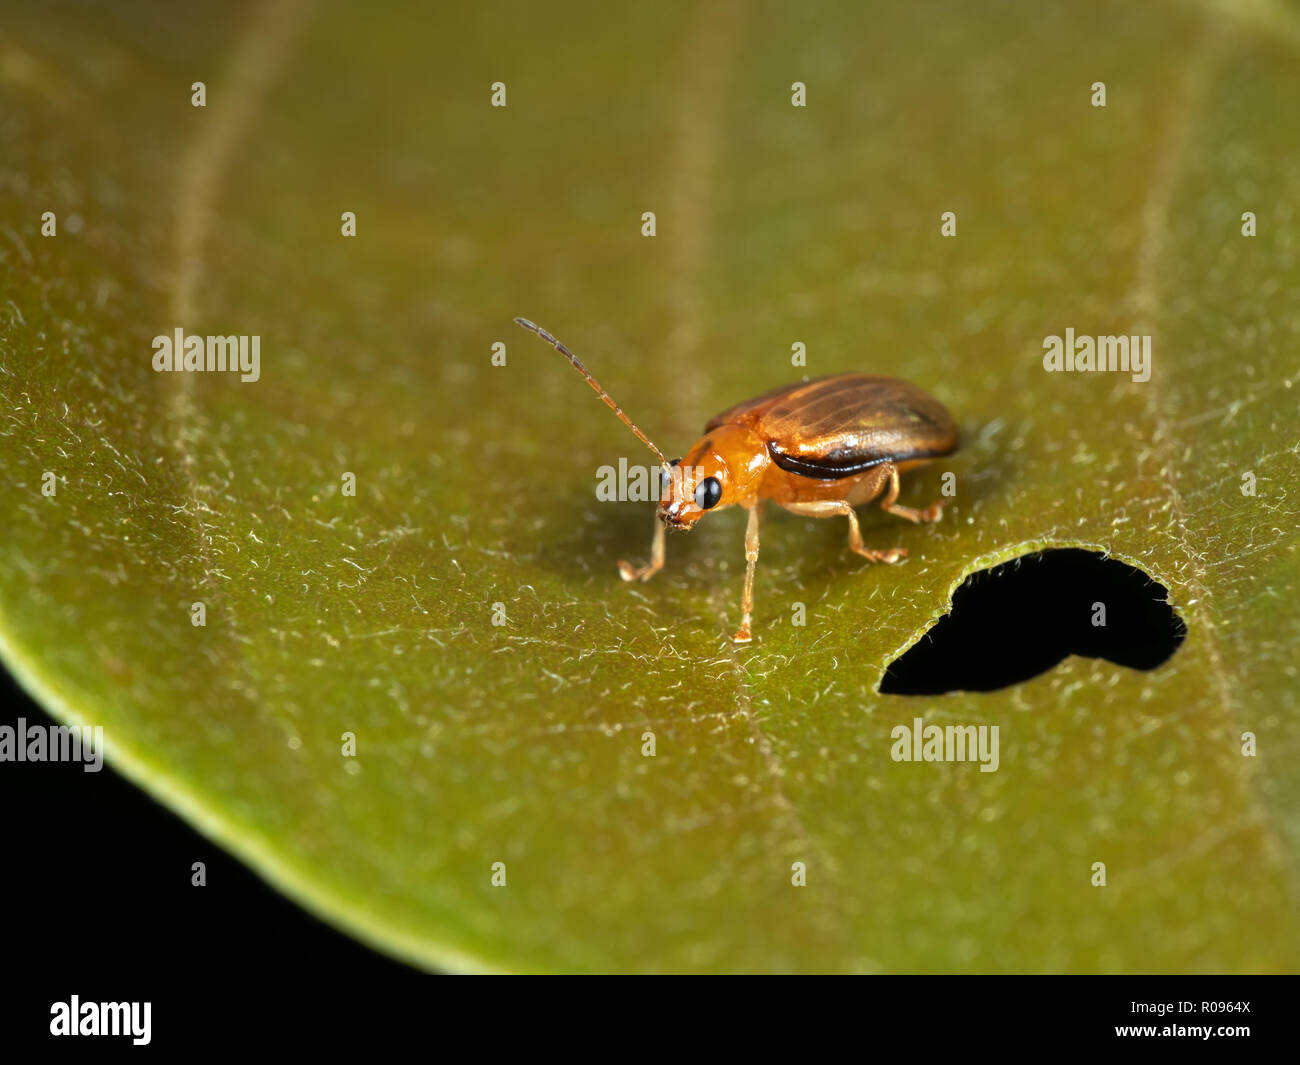 Macro Photography of Little Beetle On Leaf Stock Photo